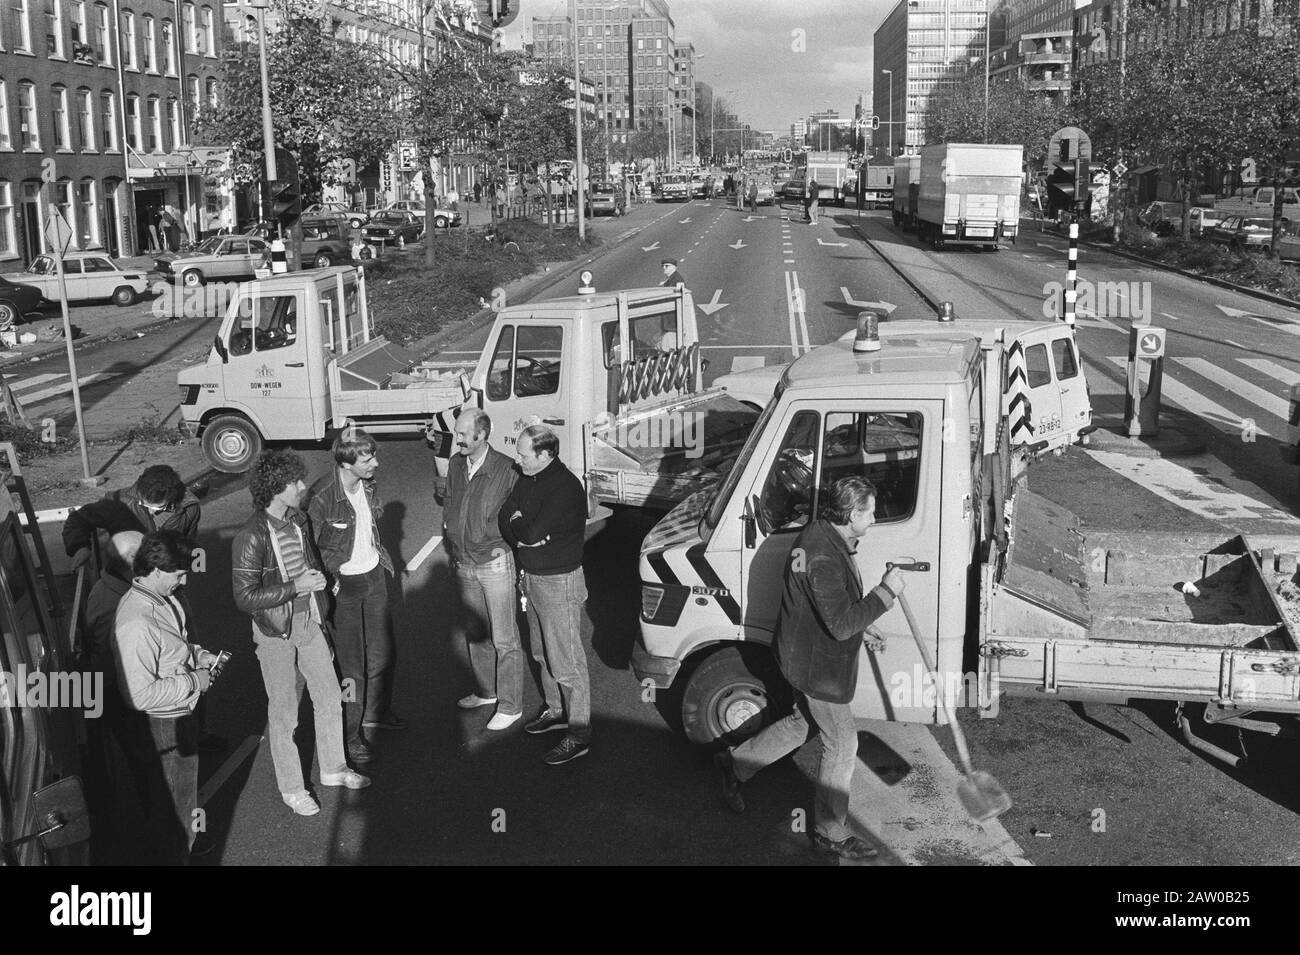 Les travailleurs municipaux bloquent la Wibautstraat à Amsterdam en protestant contre les réductions de salaires Date: 28 octobre 1983 lieu: Amsterdam, Noord-Holland mots clés: Fonctionnaires, voitures, réductions, blocages, salaires et prix Banque D'Images